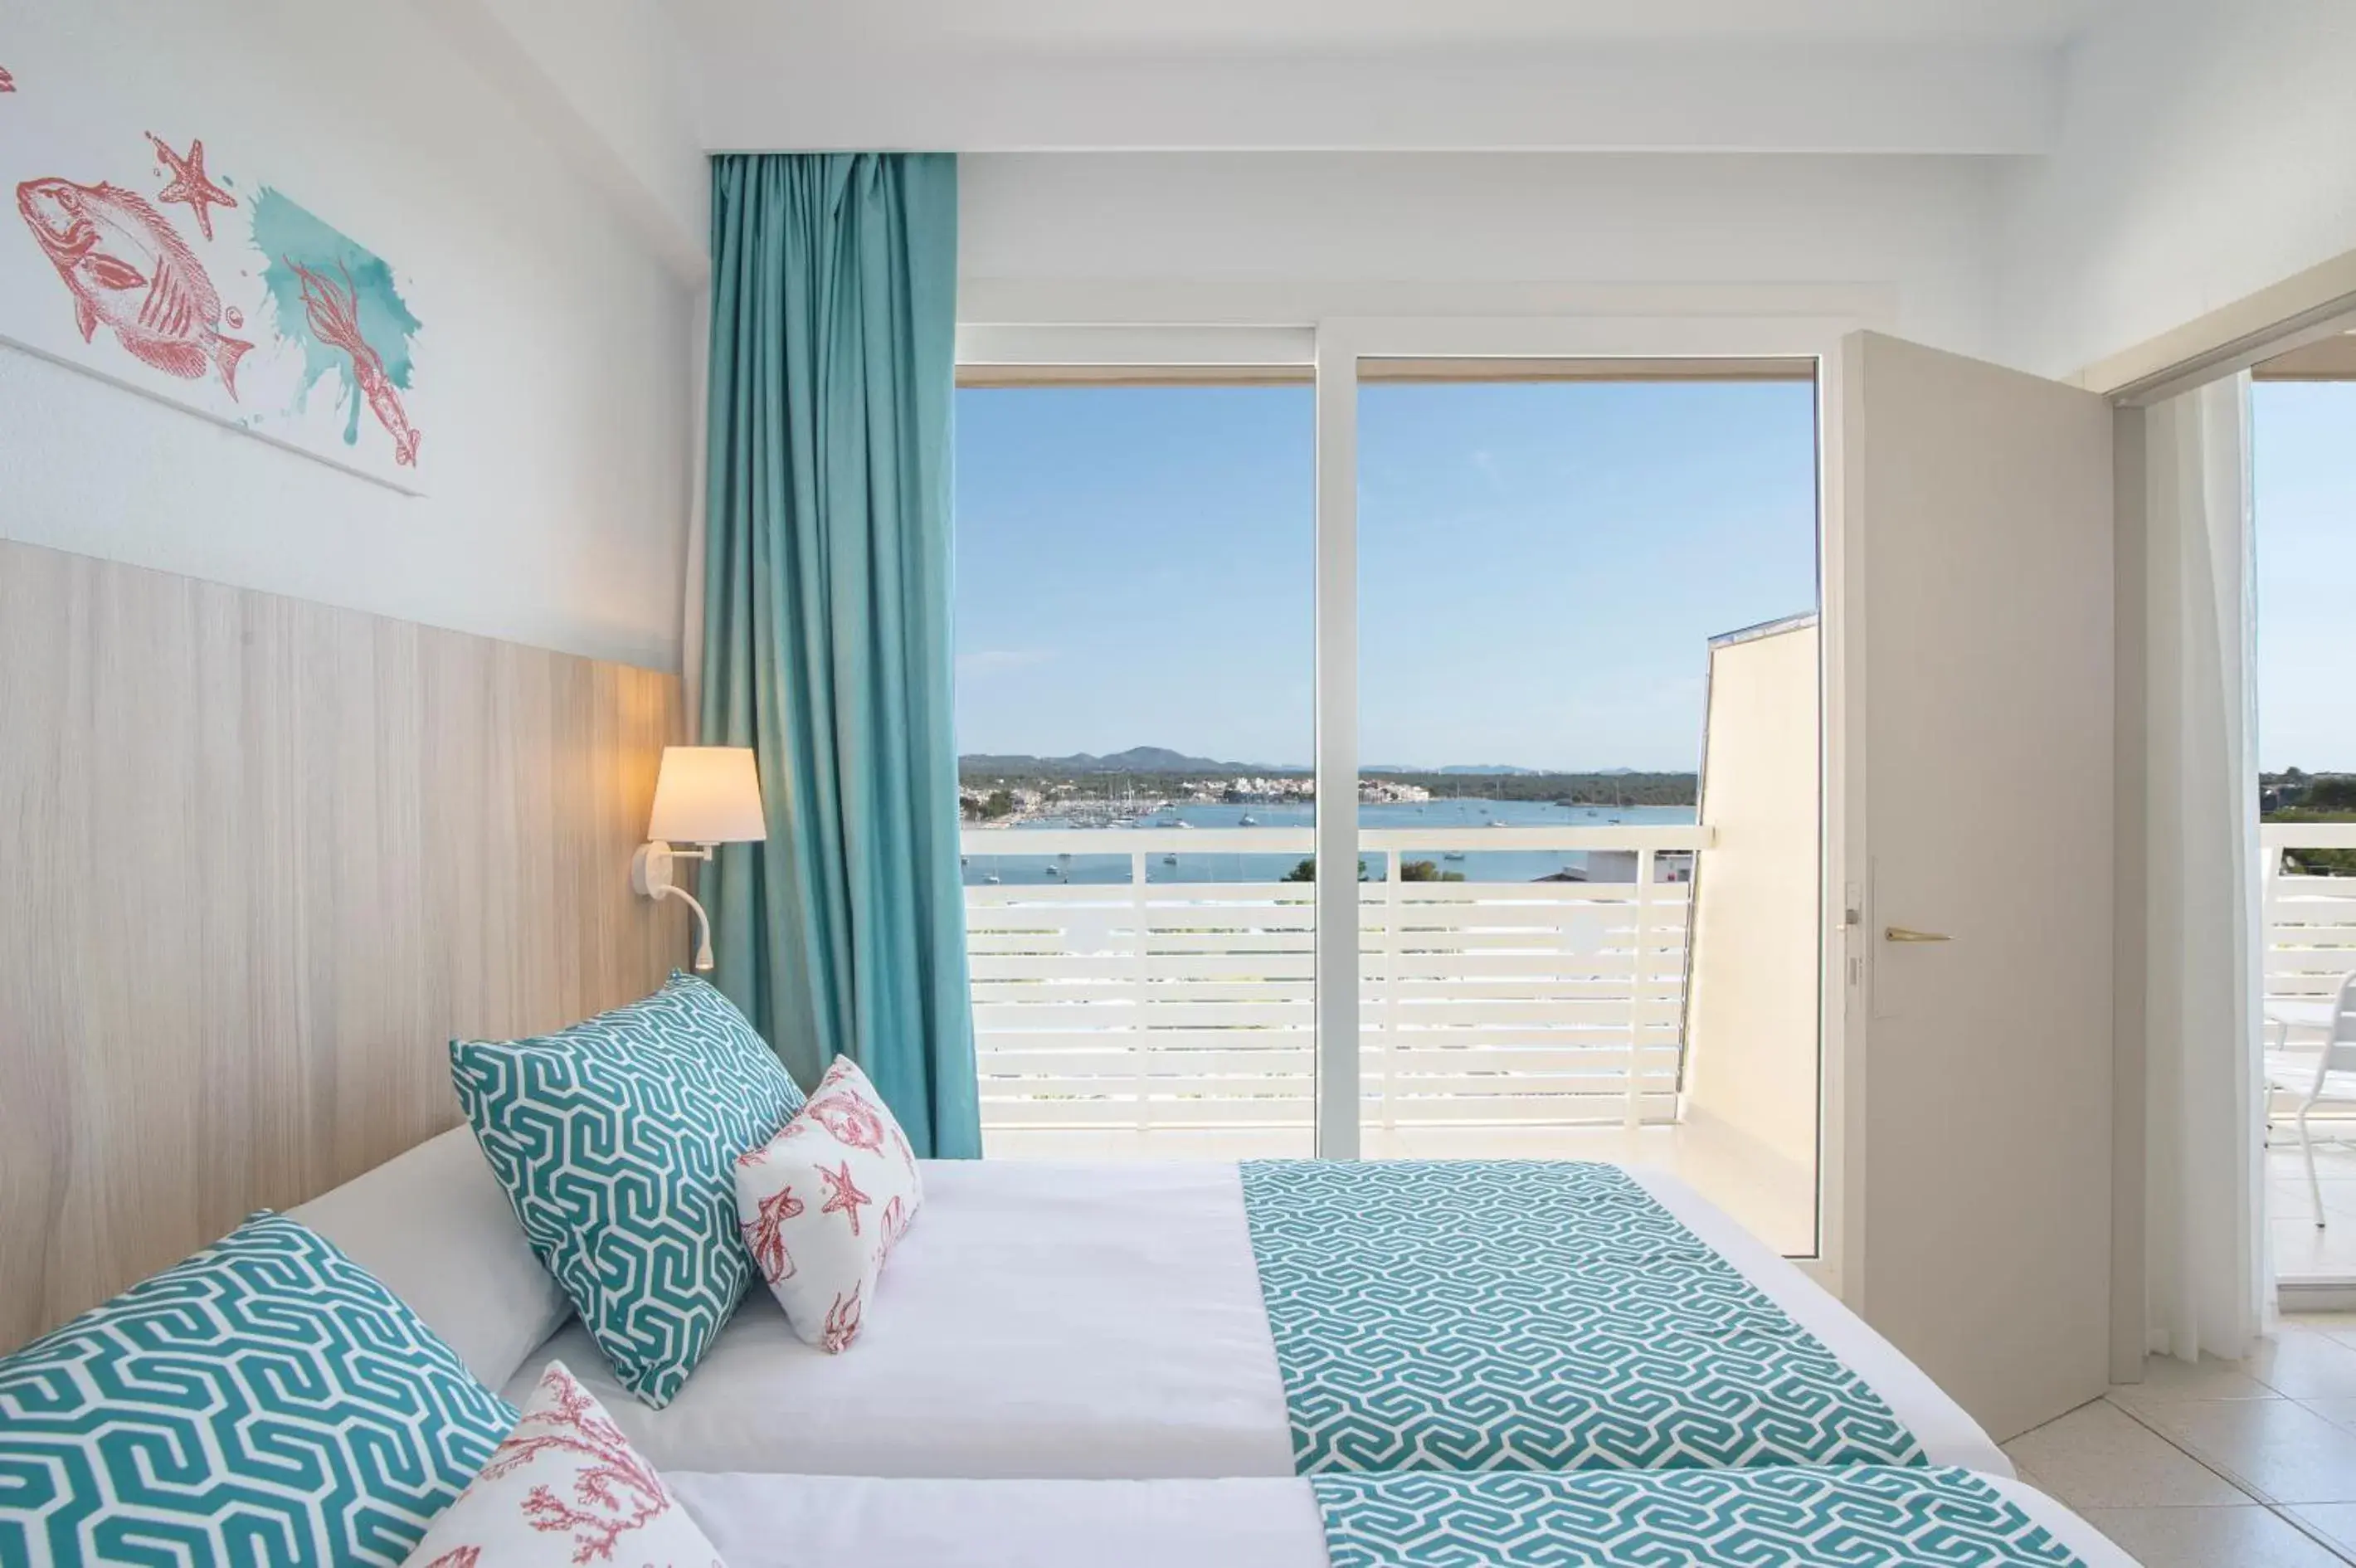 Sea view in Hotel Vistamar by Pierre & Vacances